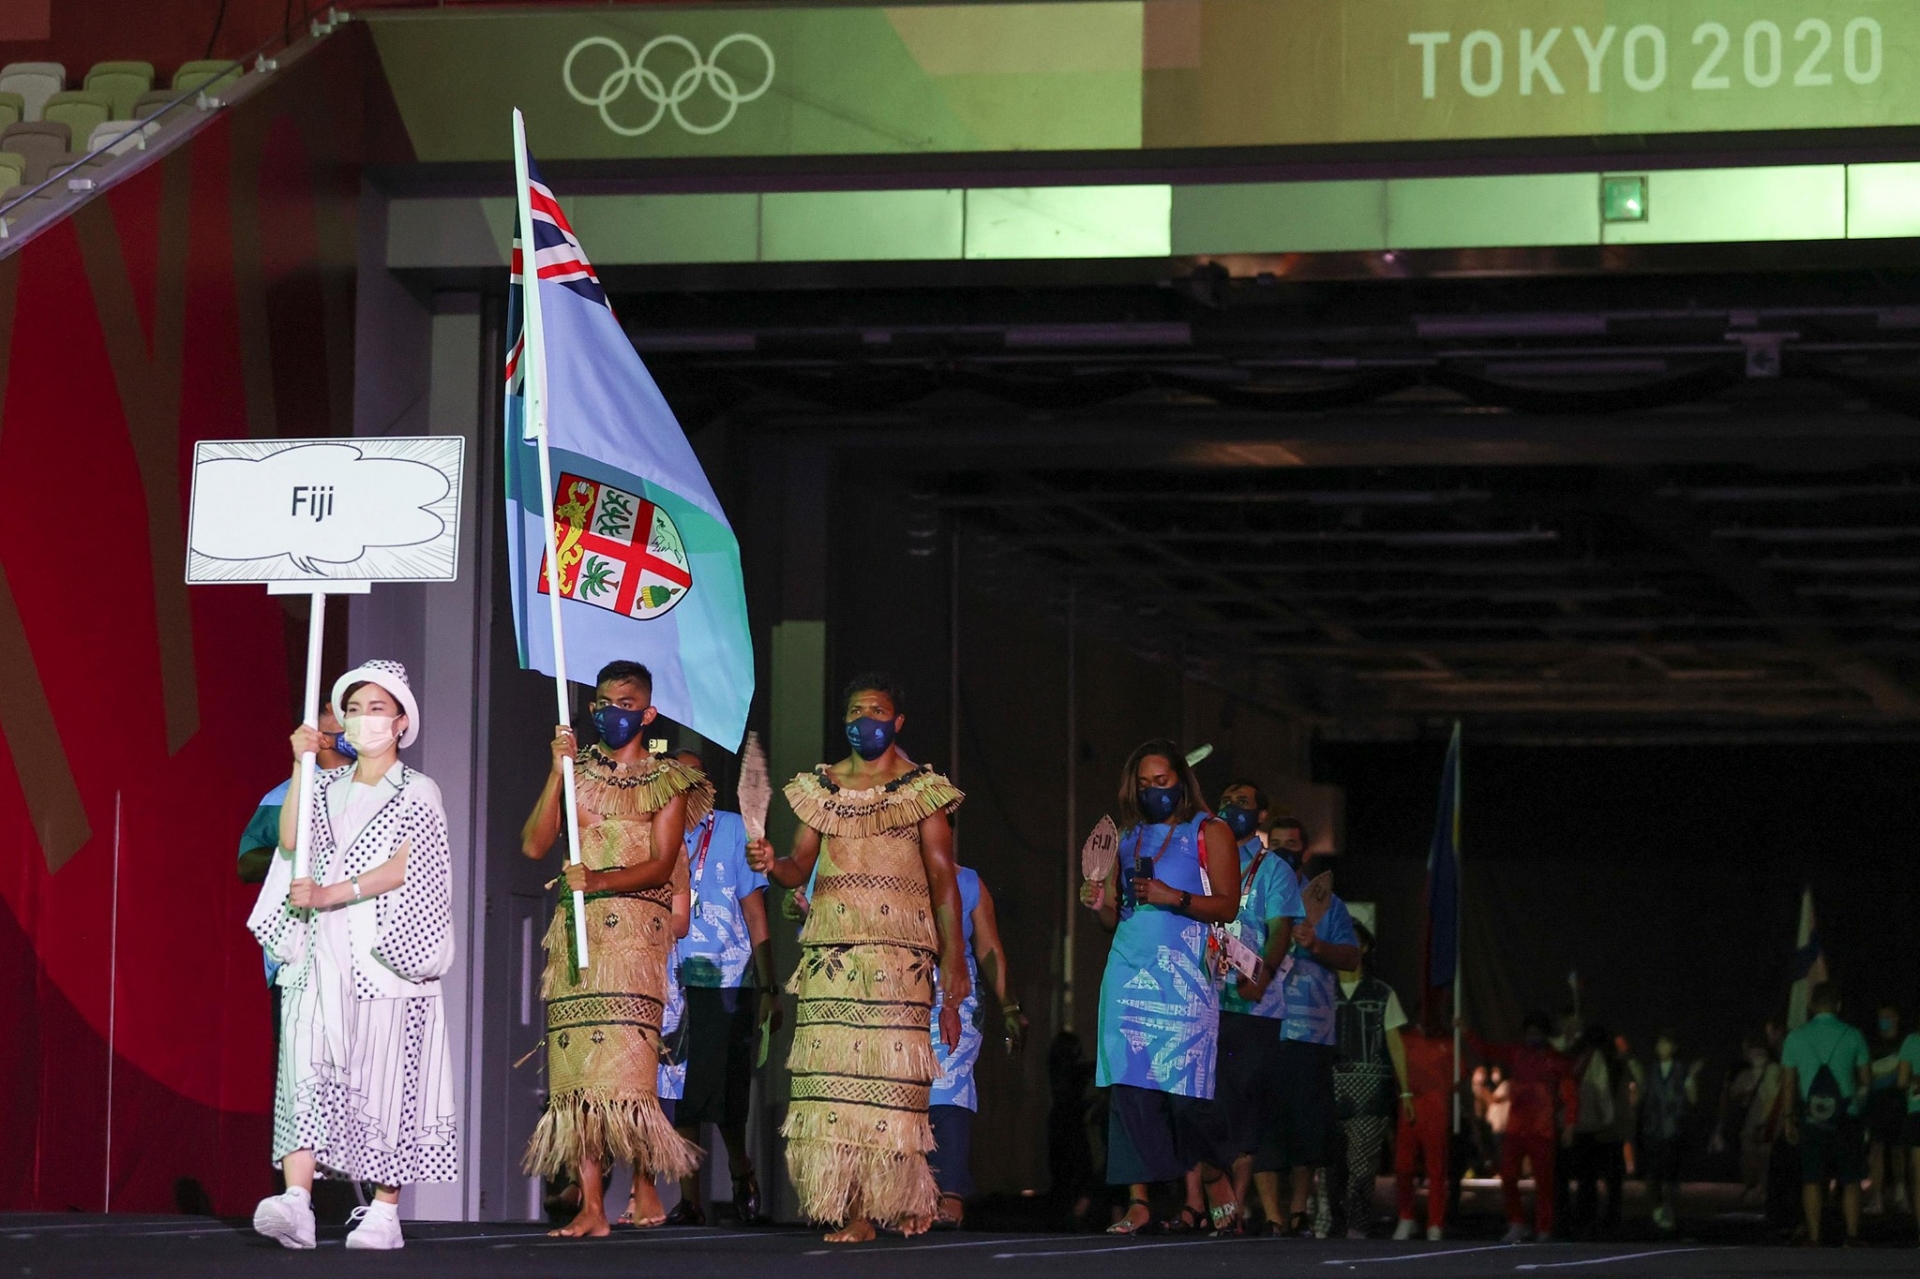 Thông điệp của Olympic là cùng nhau mạnh mẽ, đoàn kết và bình đẳng